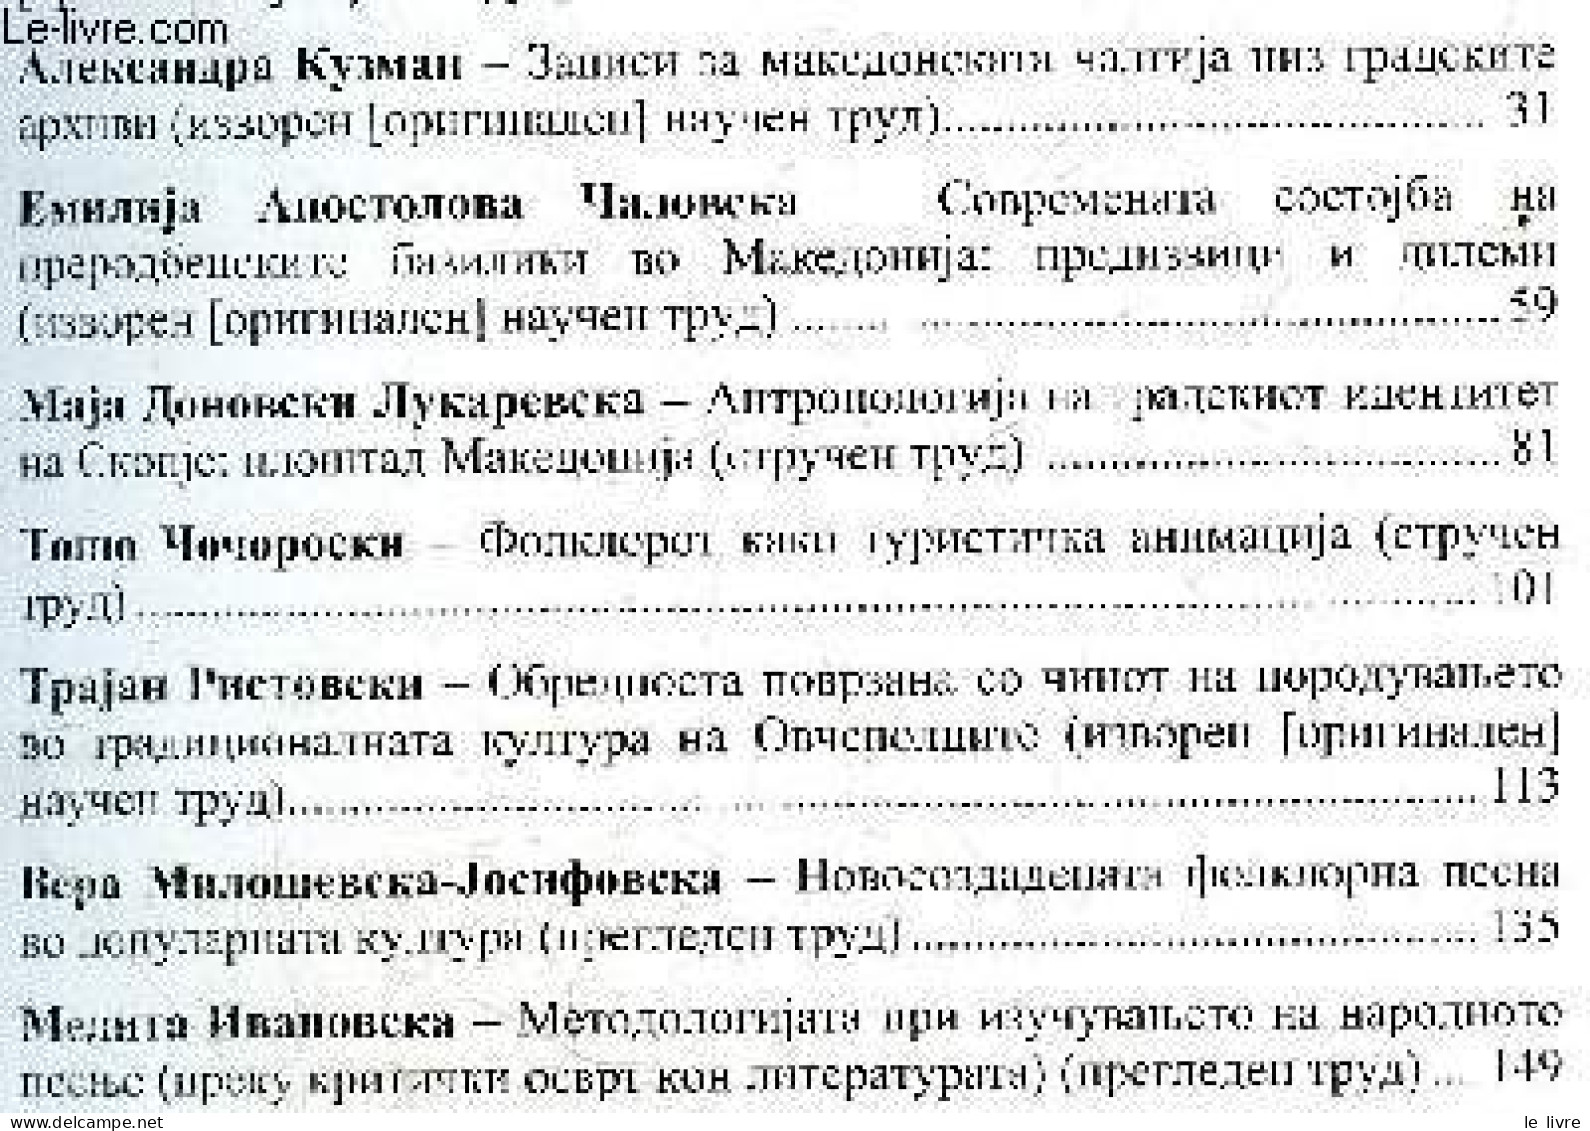 Makedonski Folklor - Godina LIII, Broj 82, Skopje, 2022 - UDC 398 / Folklore Macédonien - Volume 82, Annee LIII / Macedo - Ontwikkeling